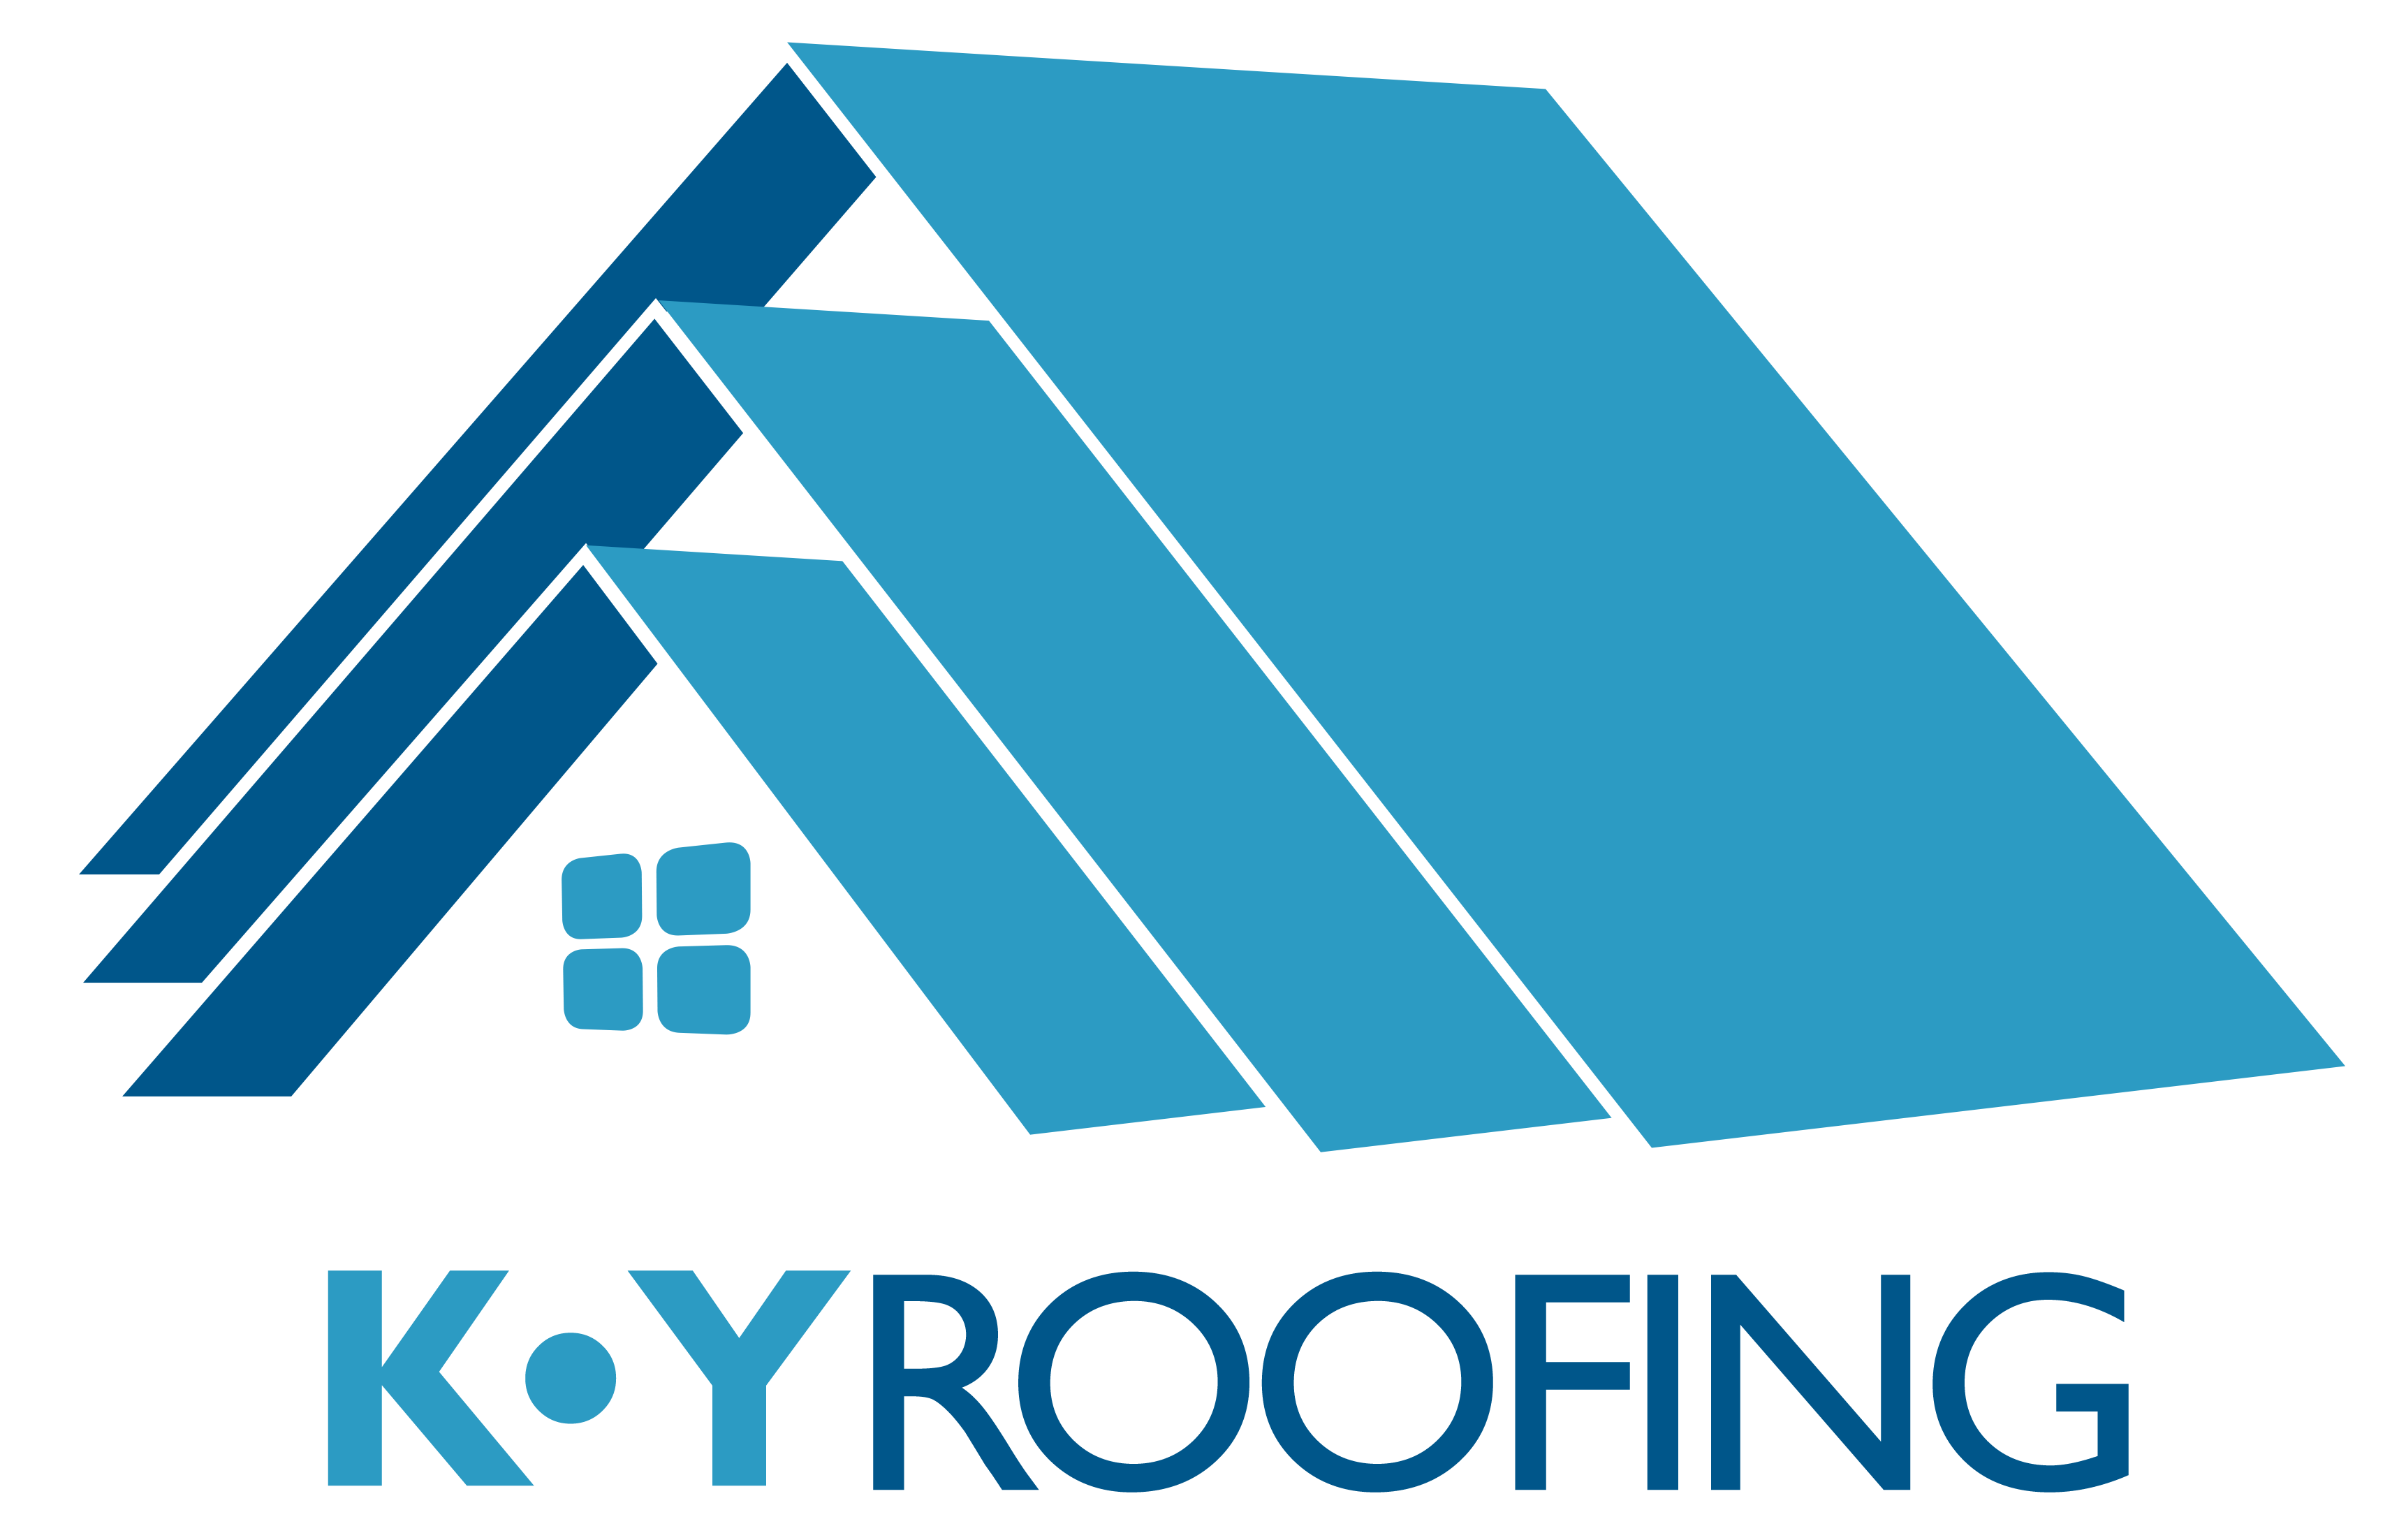 KY ROOFING LTD.'s logo